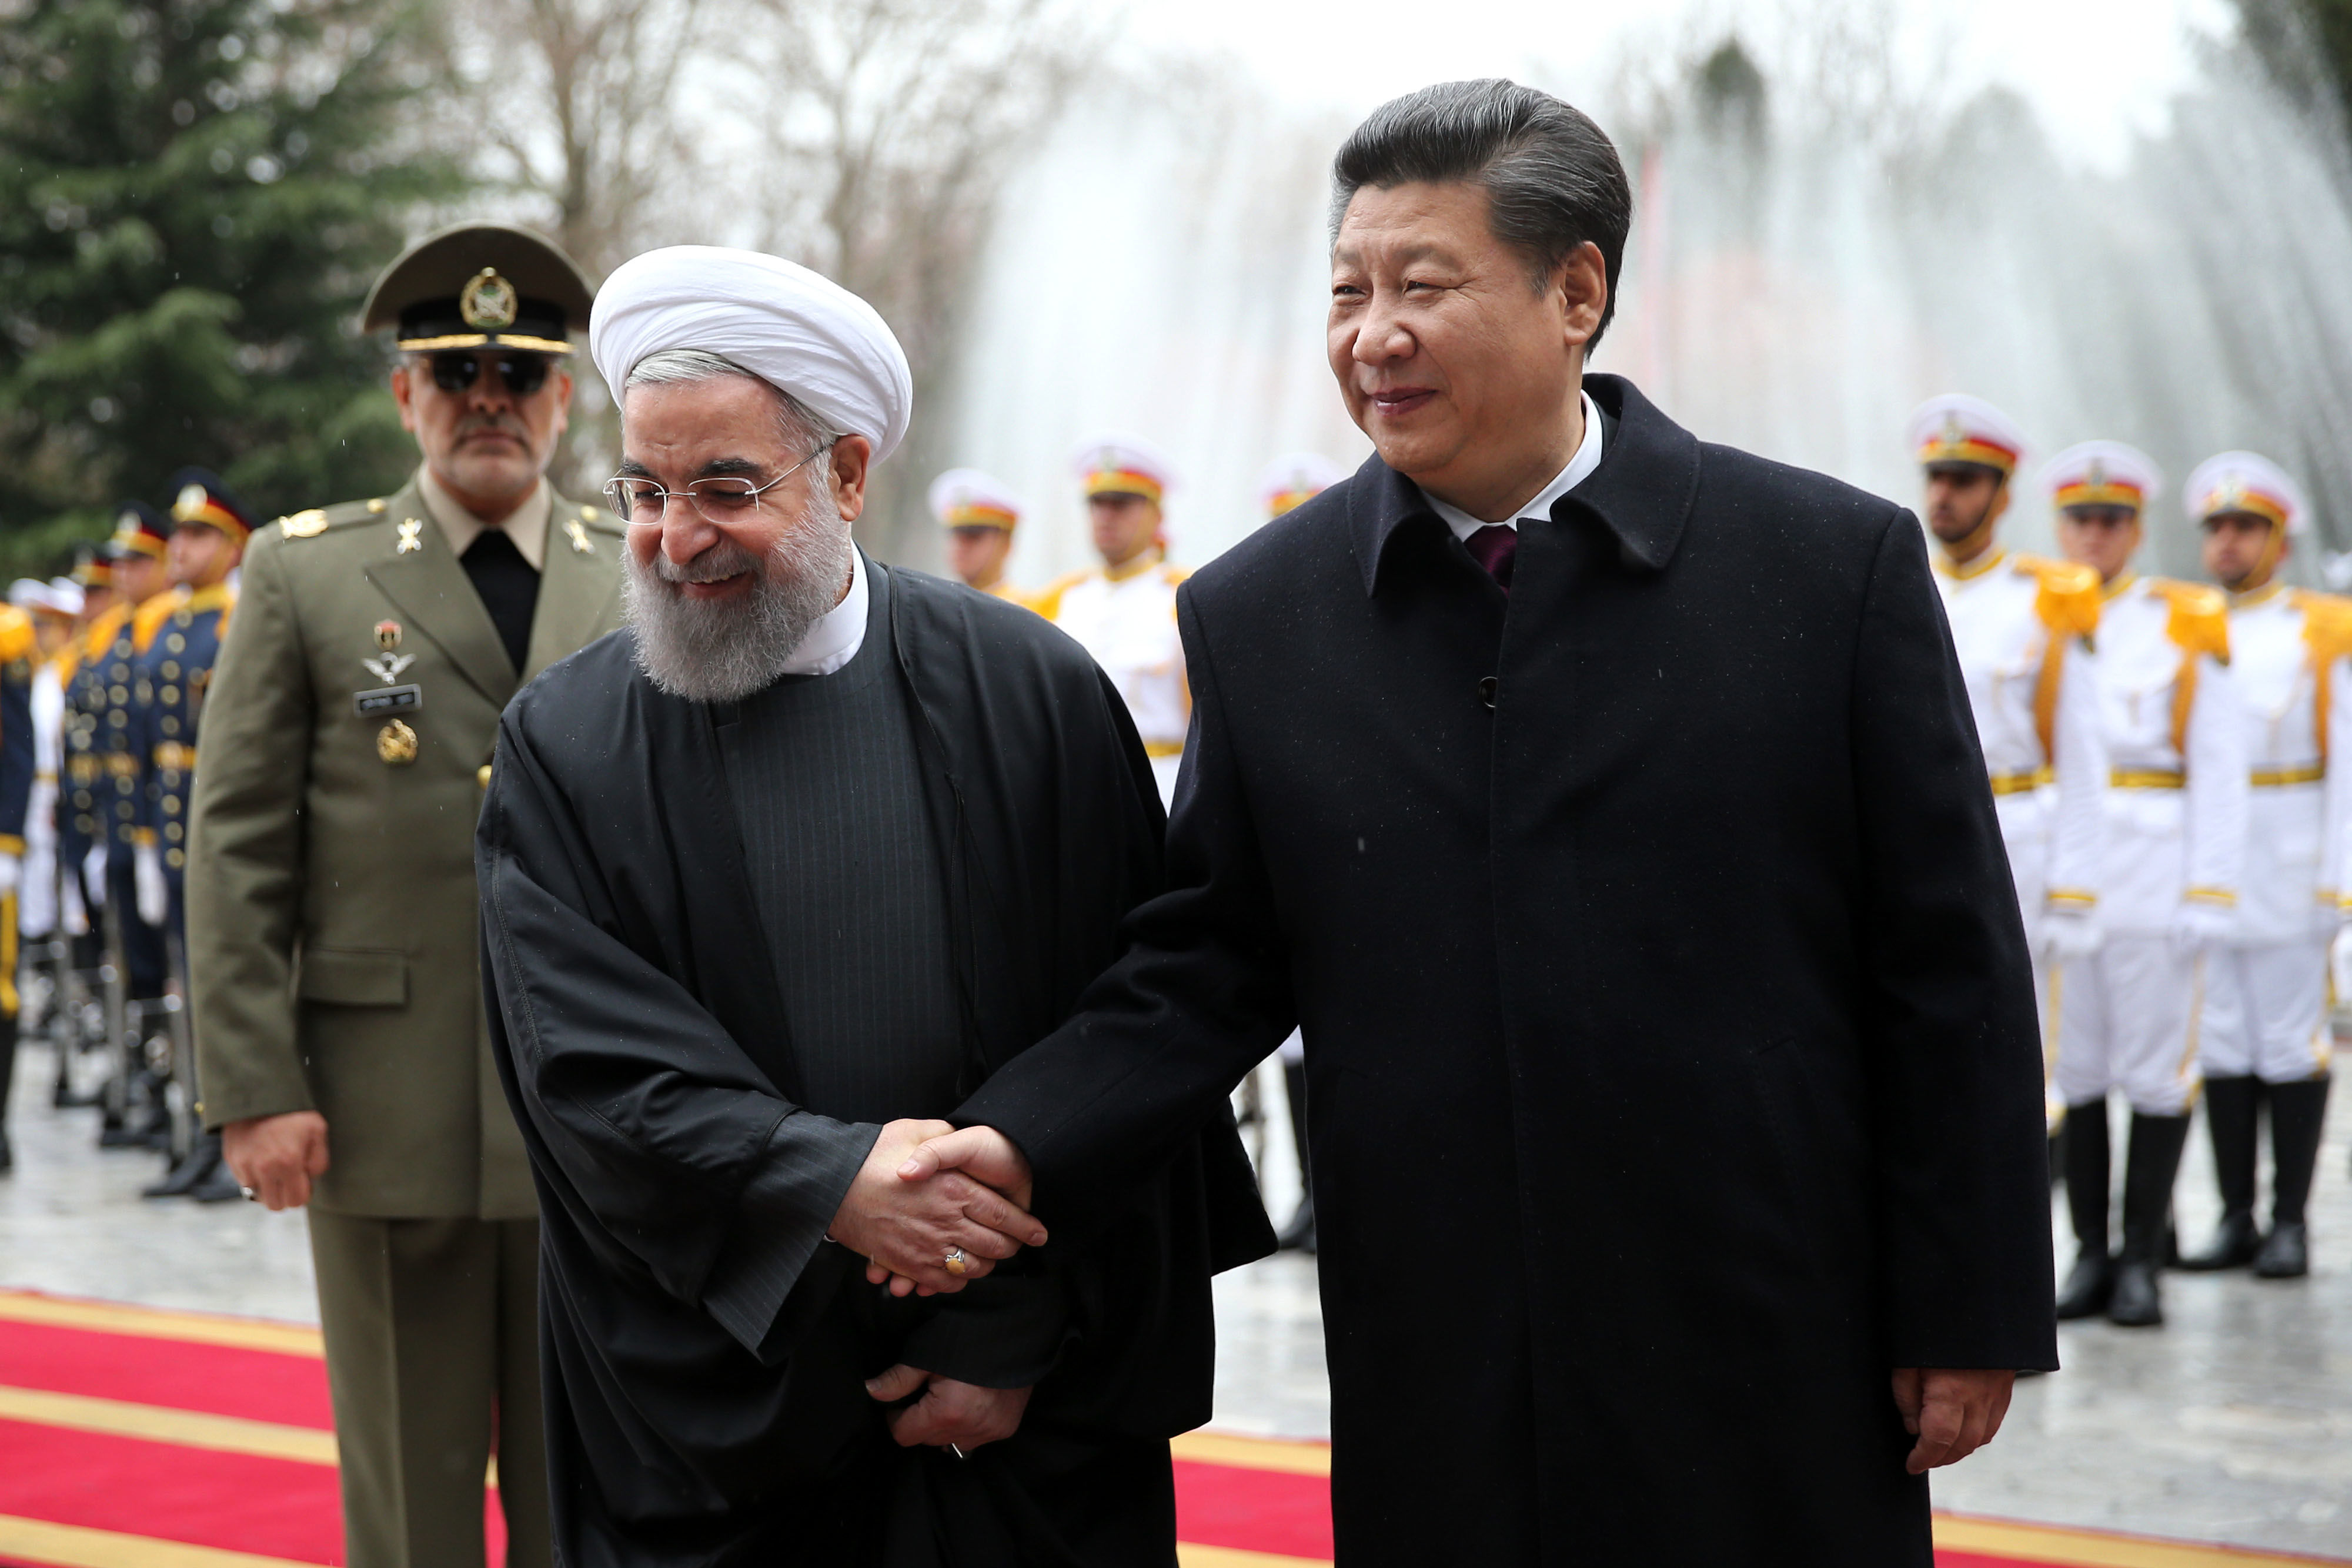 اکثر سفرا دولت روحانی سفرای بیرونی هستند/ شخصی سفیر چین شود که روابط دو کشور را نزدیک کند